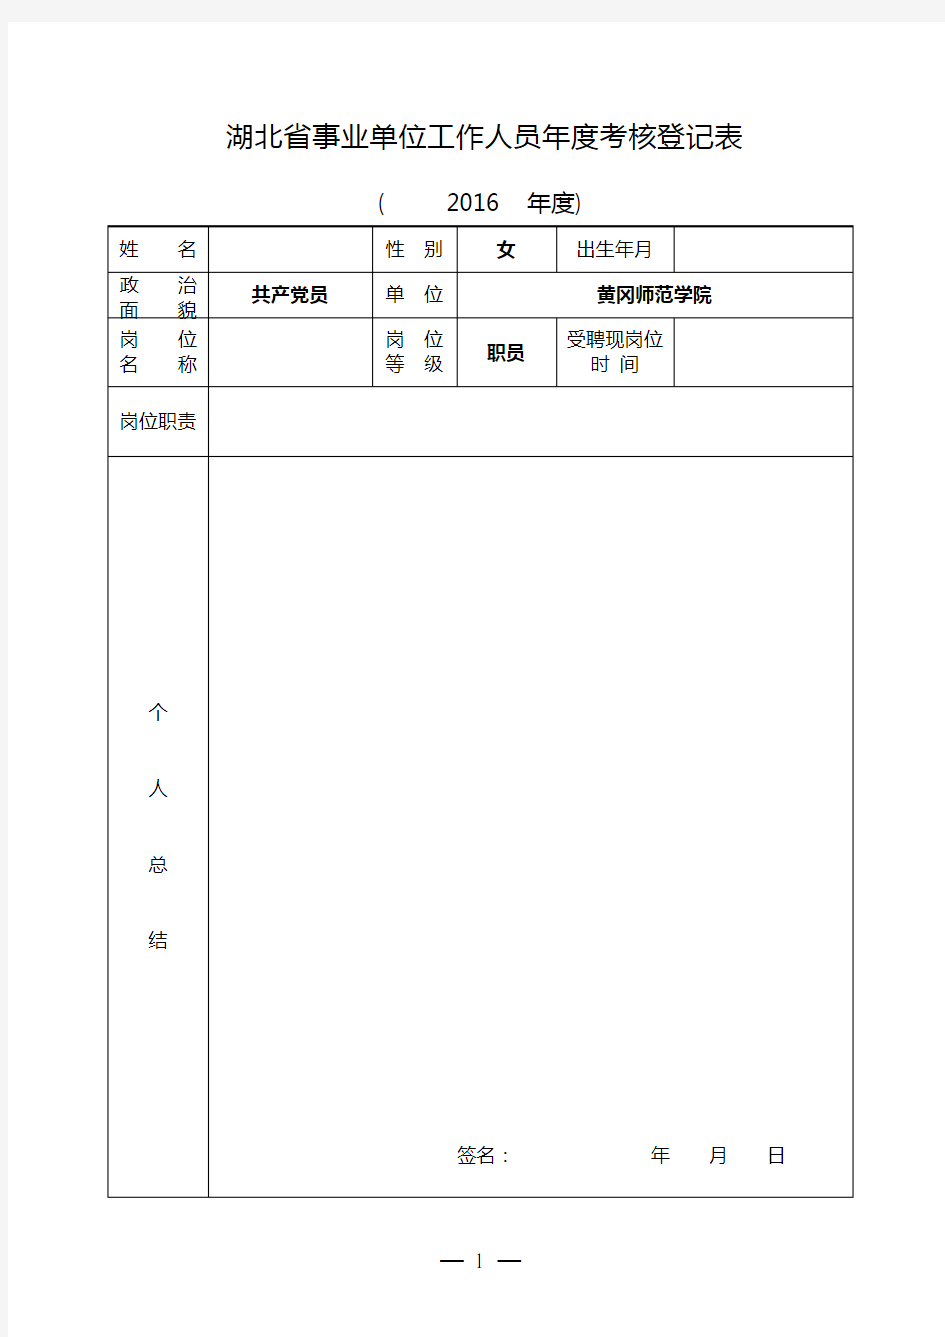 3、湖北省事业单位工作人员年度考核登记表(请用A4纸张正反打印)